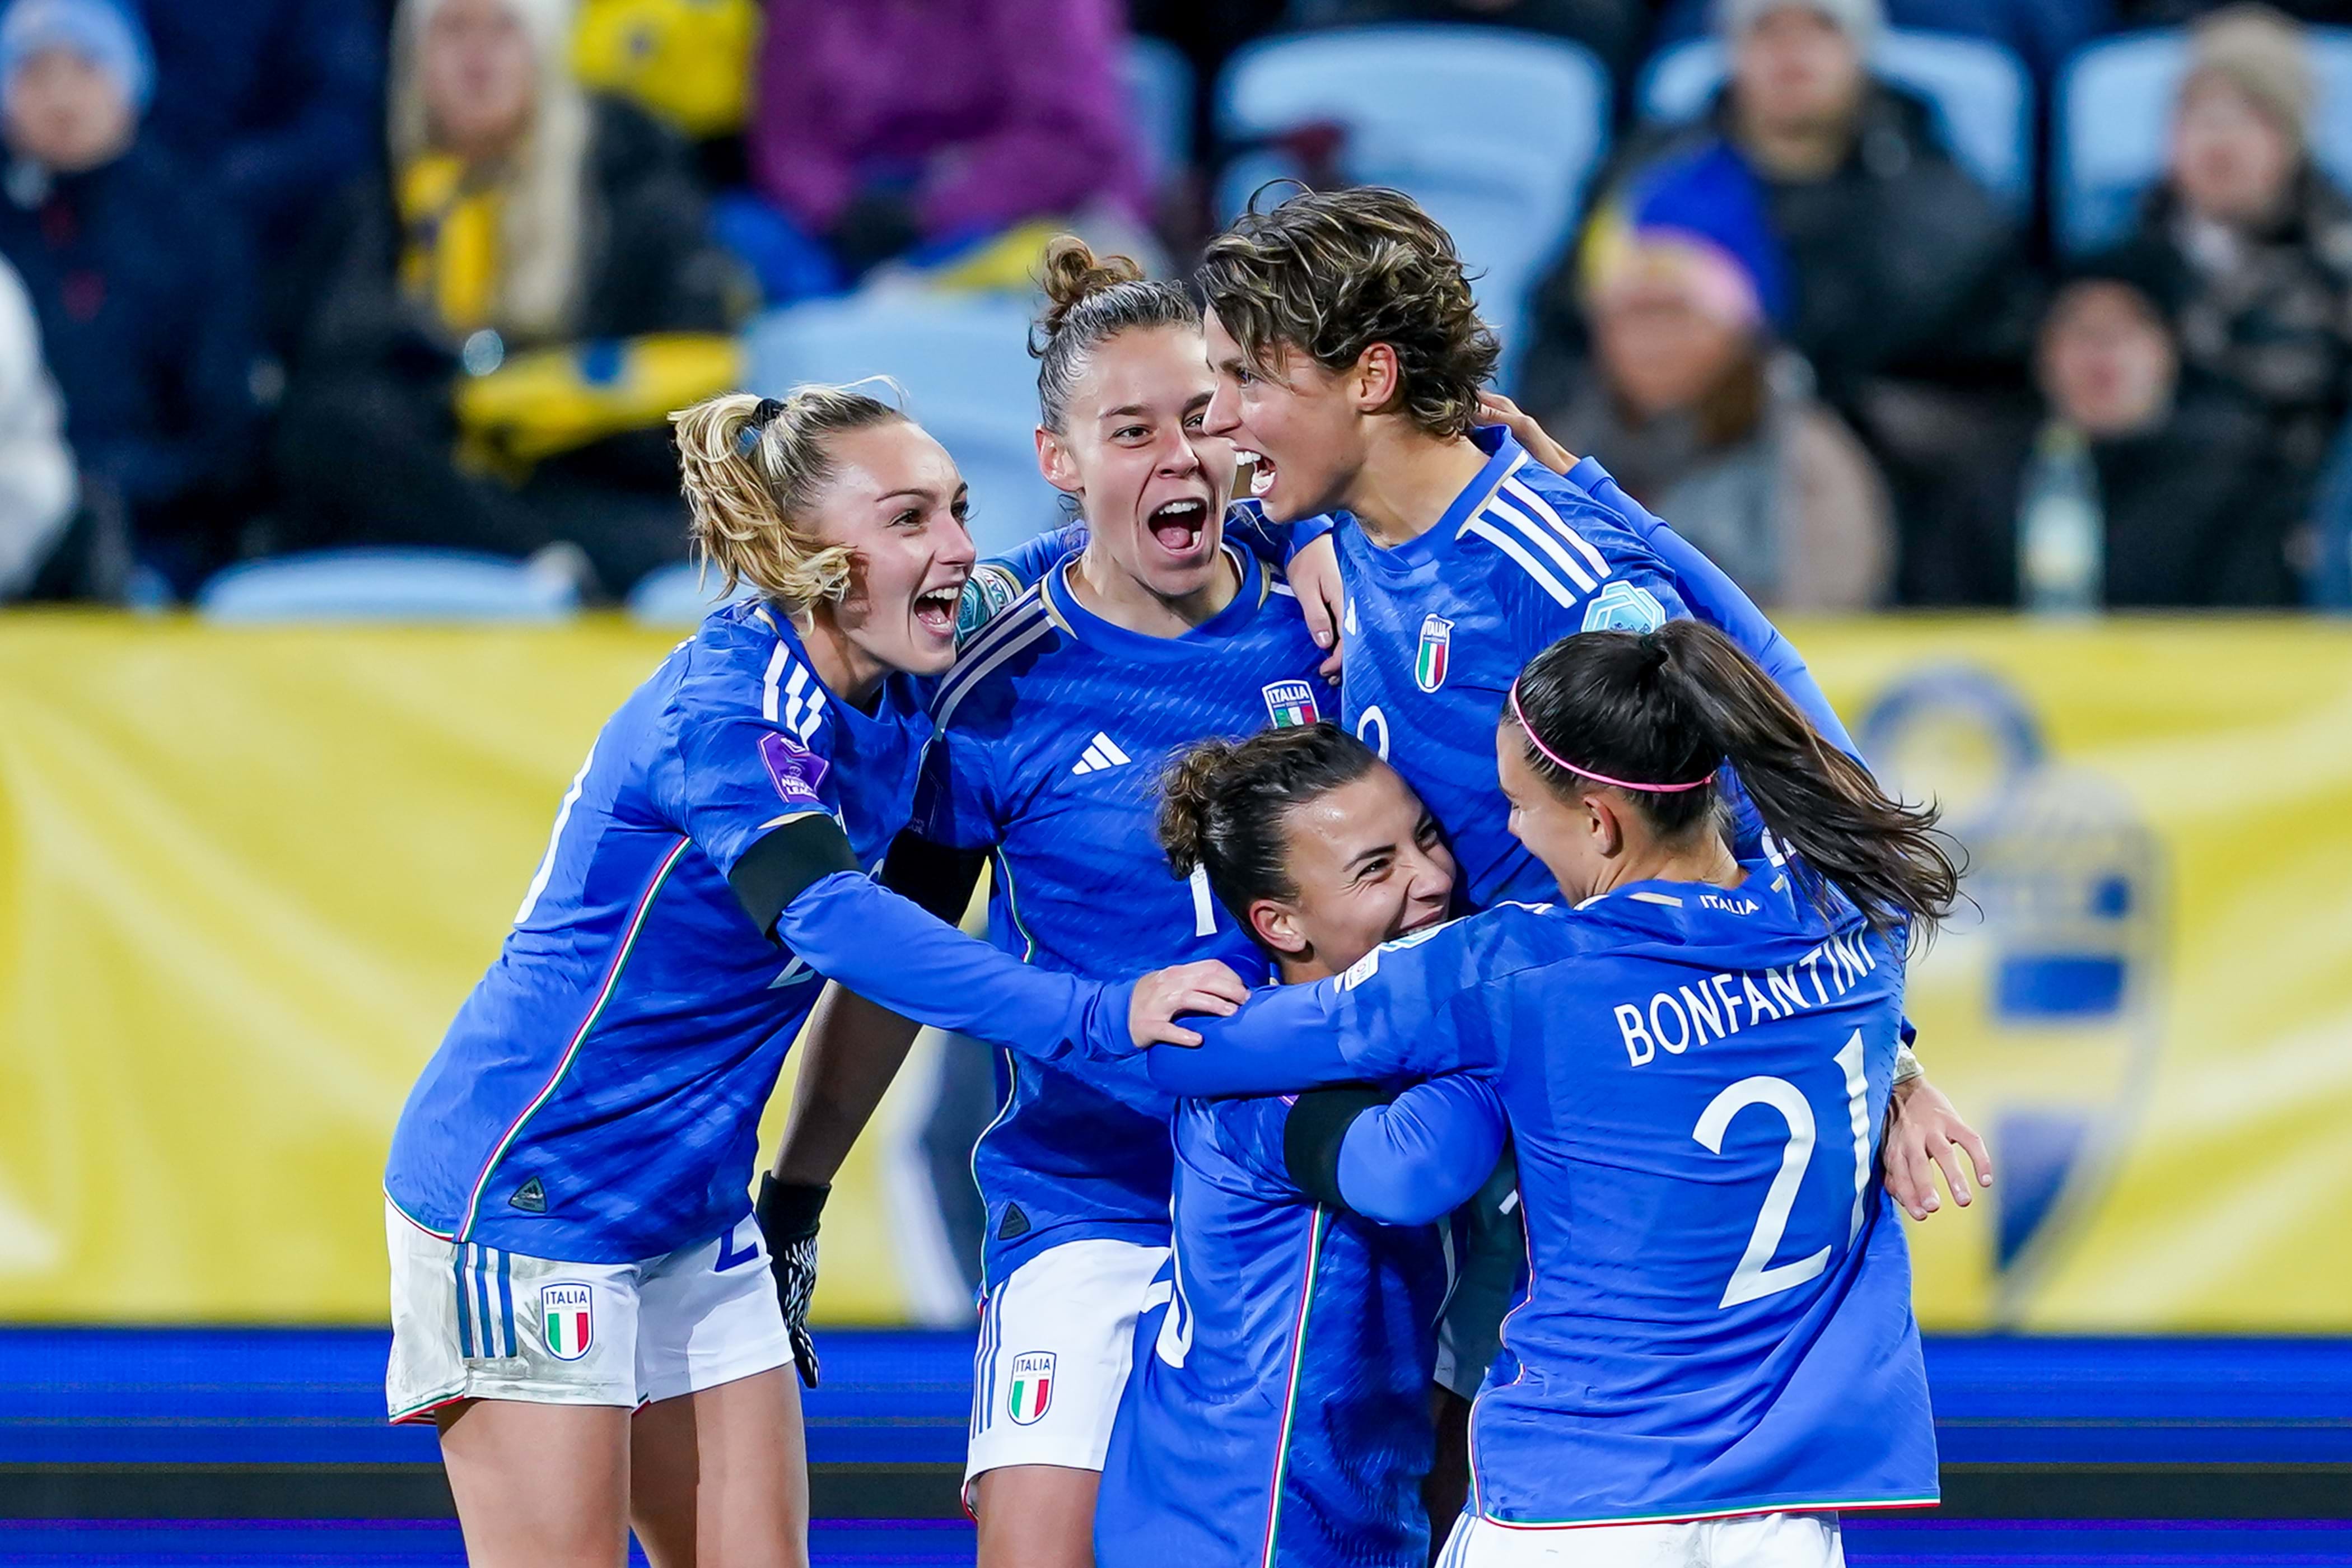 Liga de Naciones Femenina, 28 jugadoras convocadas para los últimos partidos del grupo contra España y Suiza